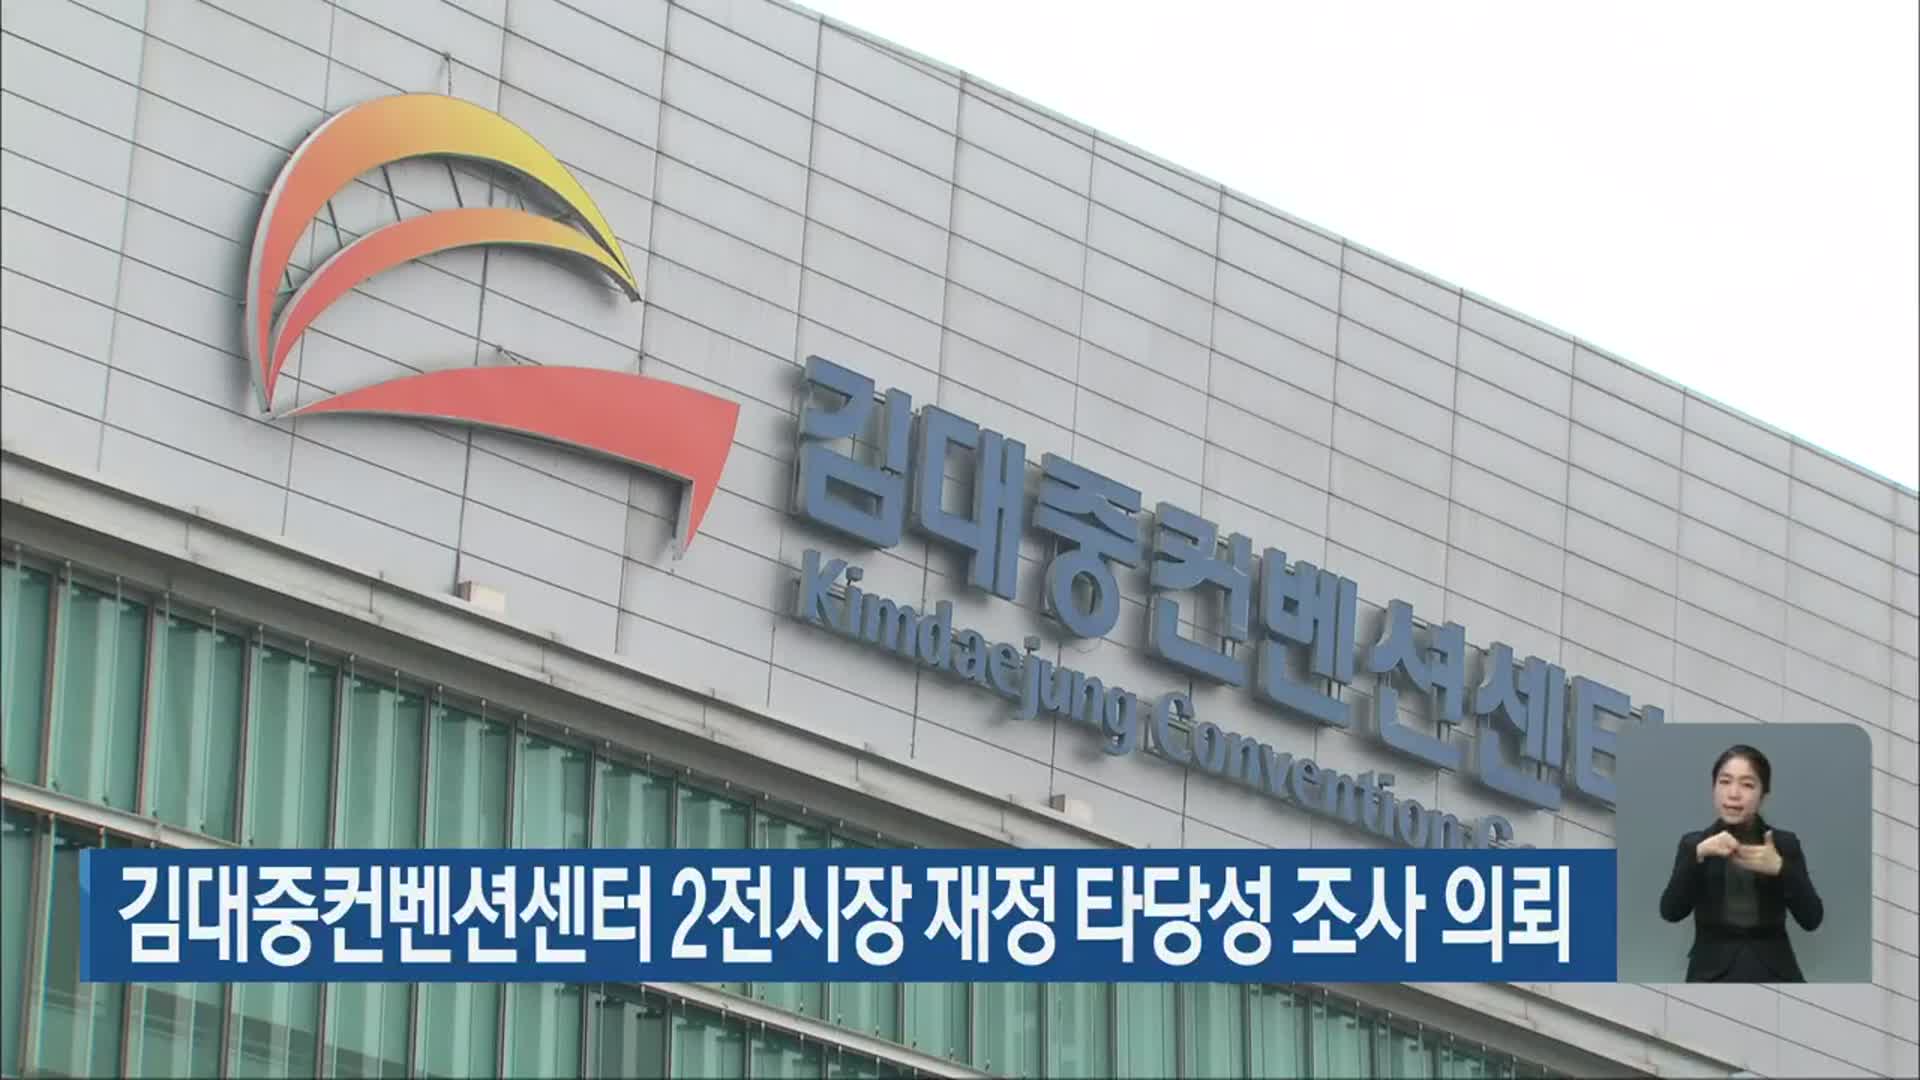 김대중컨벤션센터 2전시장 재정 타당성 조사 의뢰